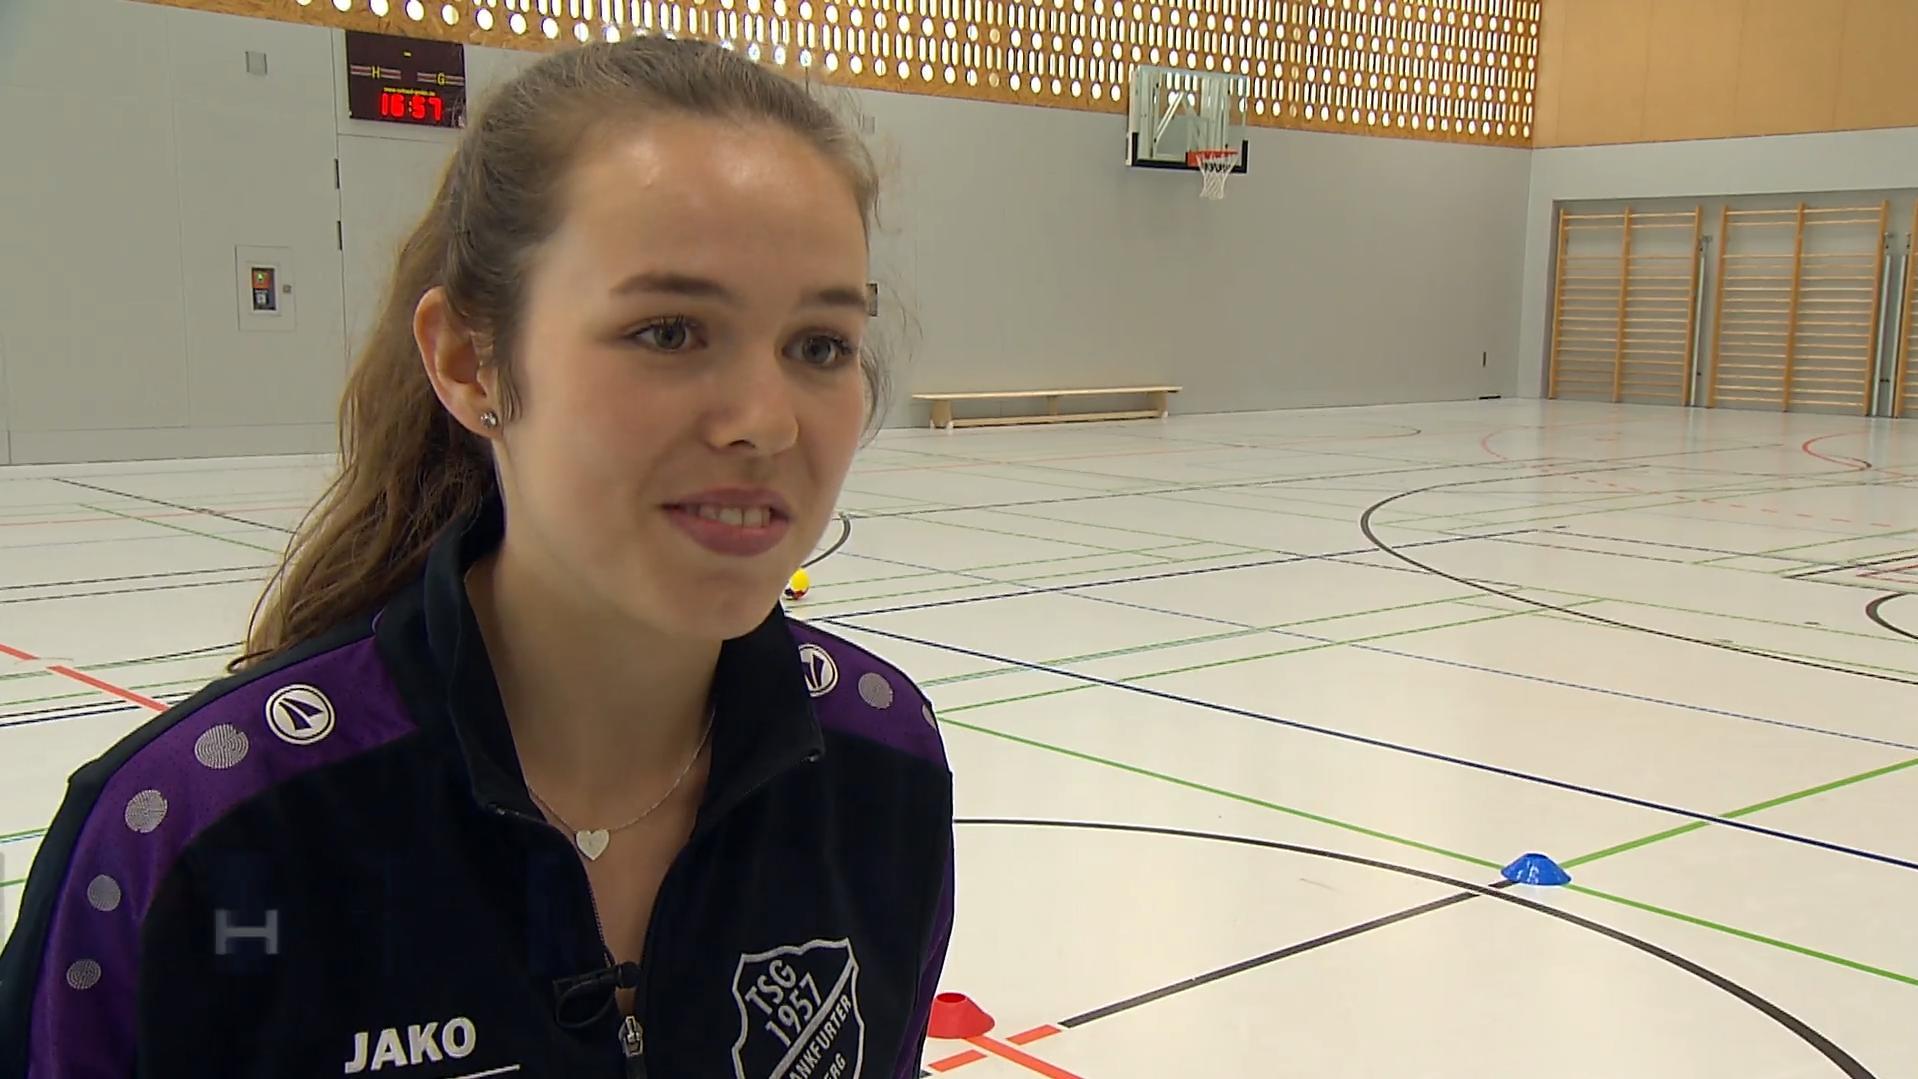 Jüngste Streetworkerin Deutschlands: Seit sie 17 ist, setzt sich Carla Sprenger (19) für benachteiligte Kinder ein - unter anderem mit Handballtraining für Mädchen aus Flüchtlingsländern.